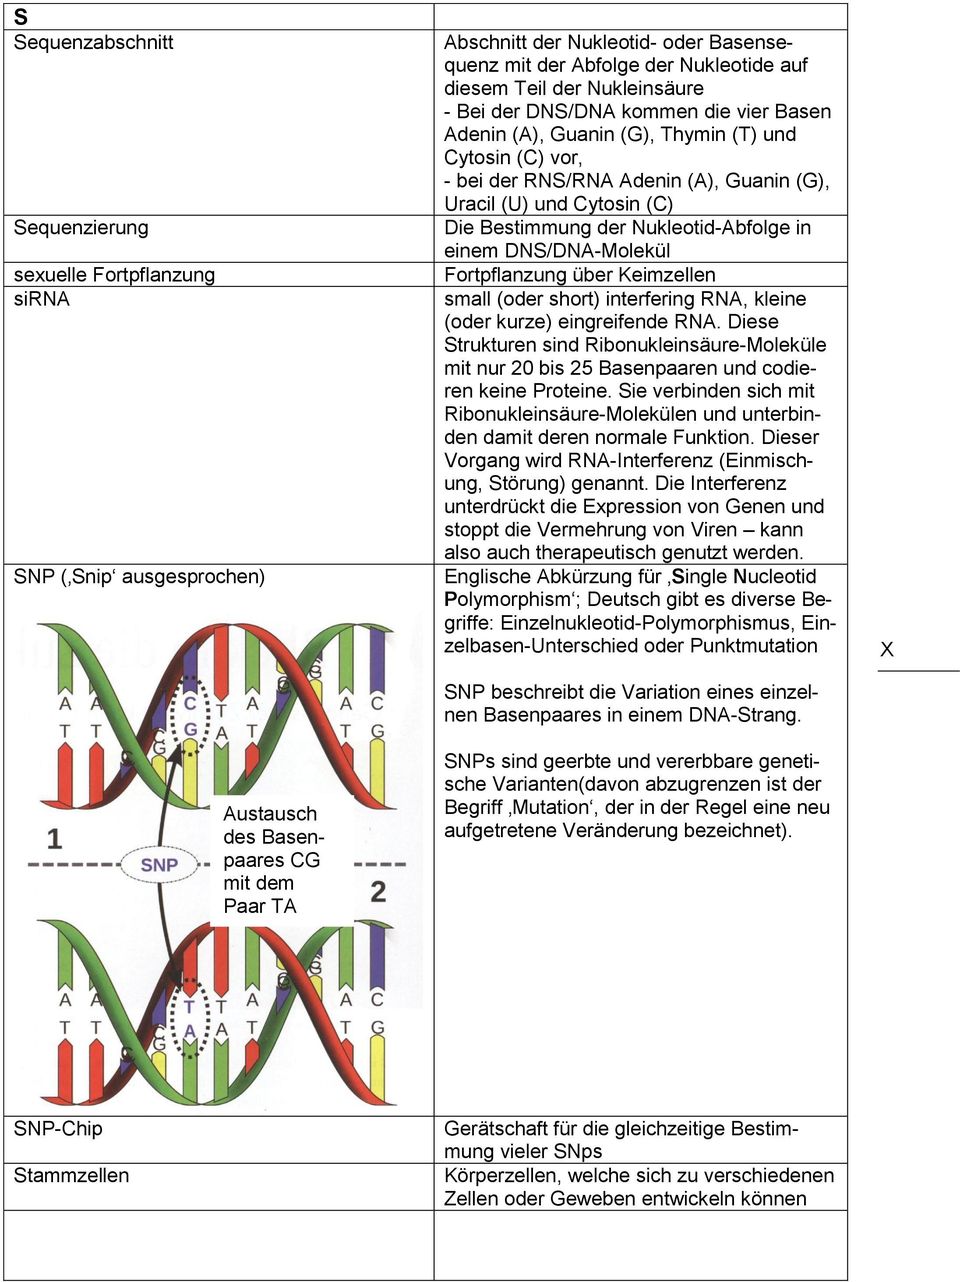 Cytosin (C) Die Bestimmung der Nukleotid-Abfolge in einem DNS/DNA-Molekül Fortpflanzung über Keimzellen small (oder short) interfering RNA, kleine (oder kurze) eingreifende RNA.